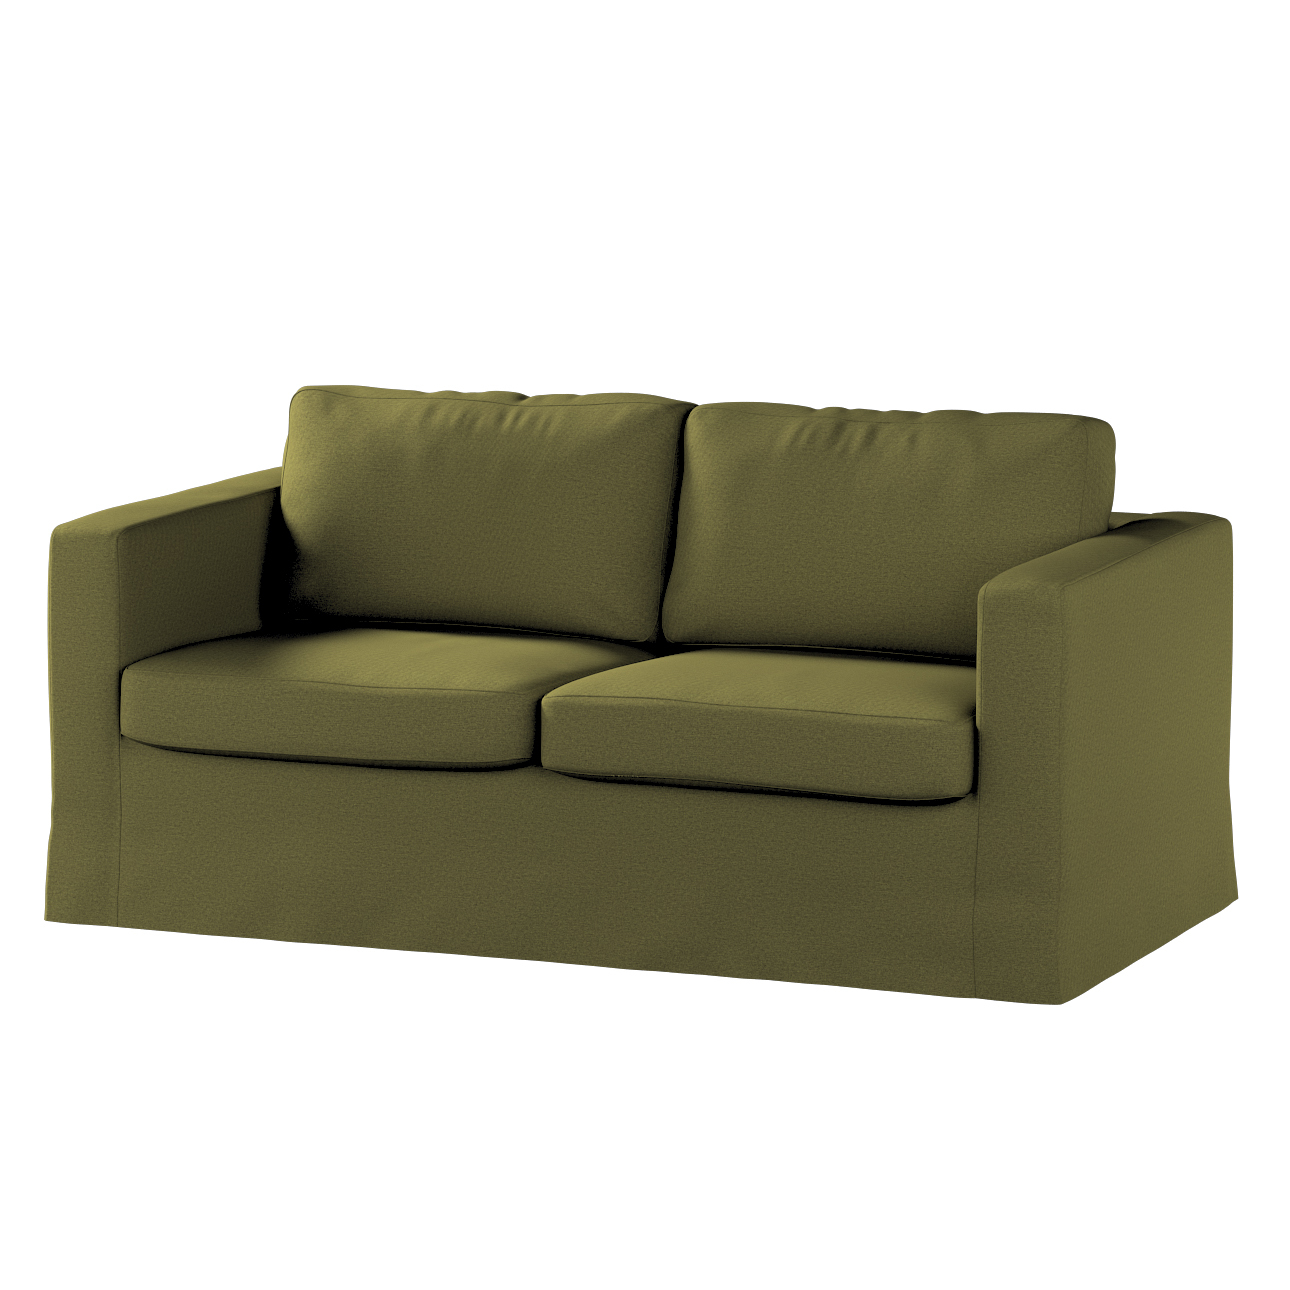 Bezug für Karlstad 2-Sitzer Sofa nicht ausklappbar, lang, olivgrün, Sofahus günstig online kaufen